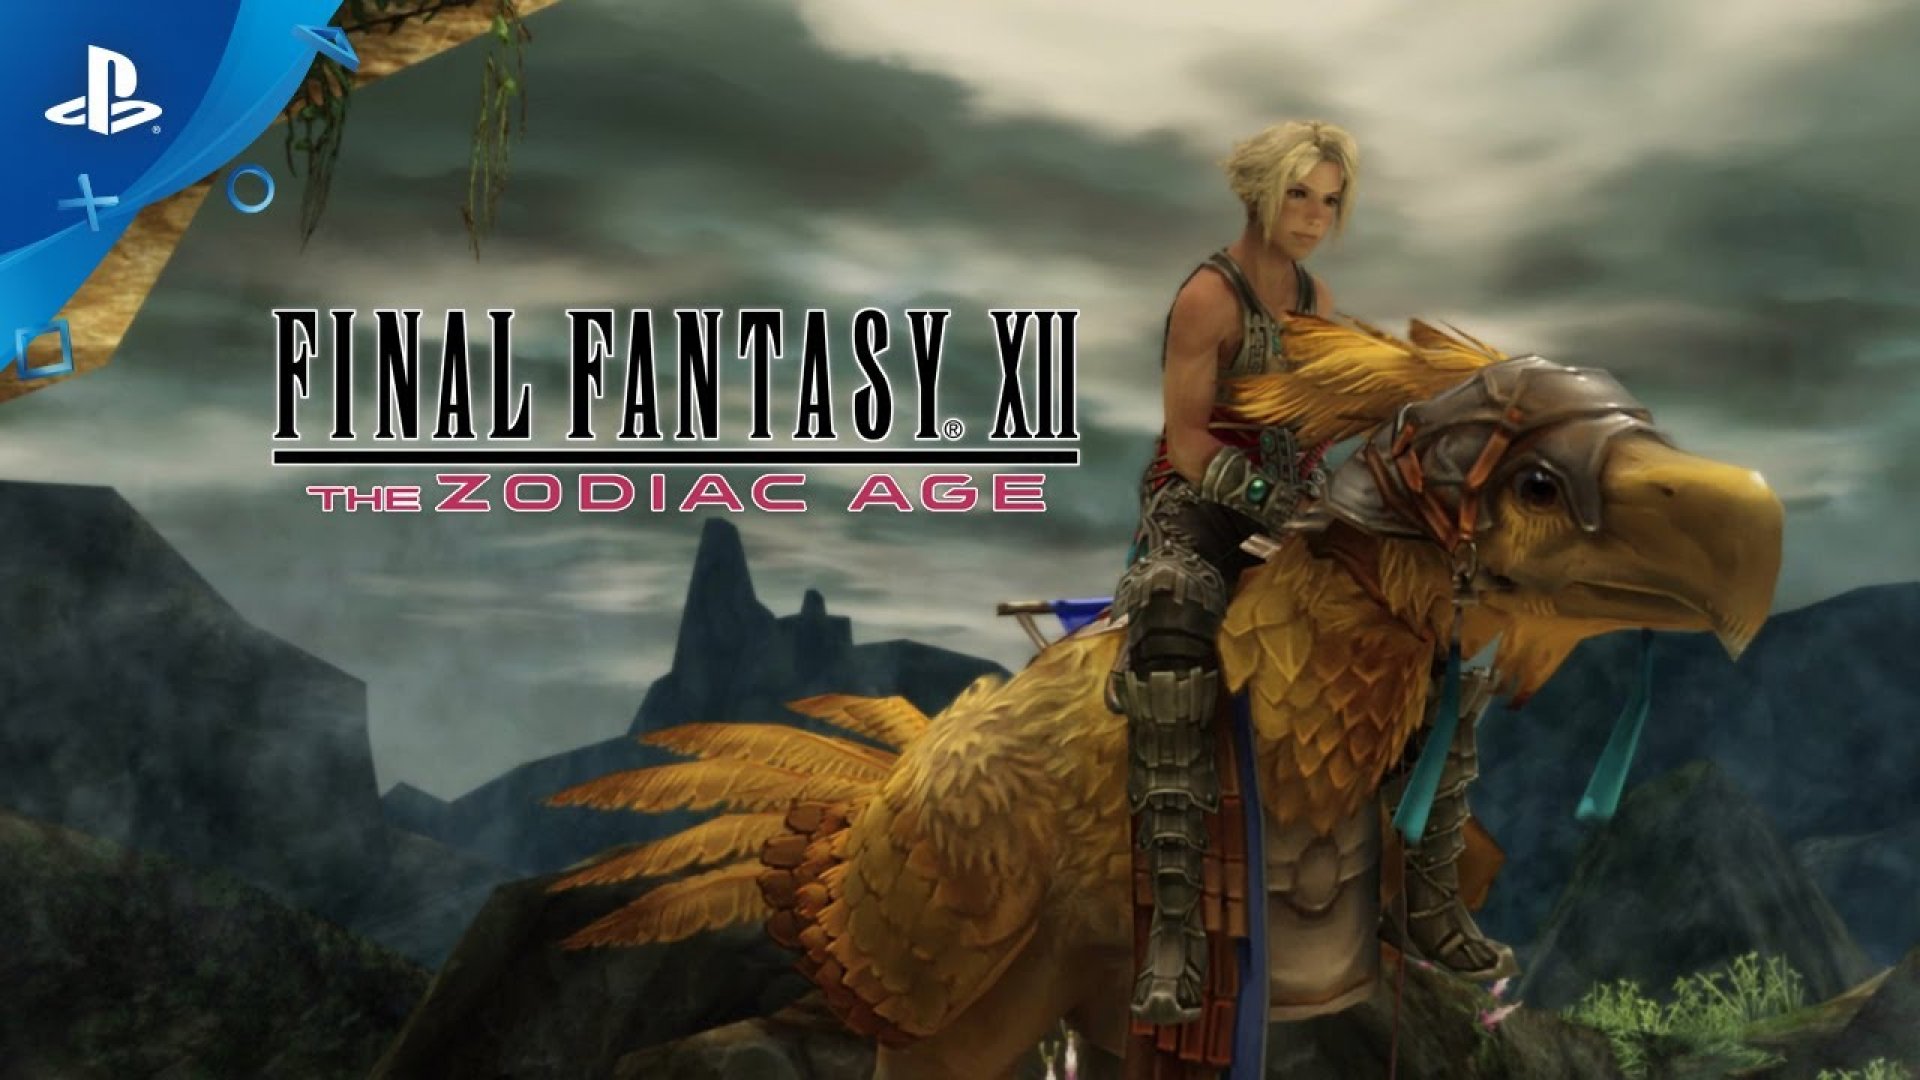 12 the zodiac age. Игра Final Fantasy 12. Final Fantasy XII: the Zodiac age. Final Fantasy 12 ps3. Ff12 Remaster.